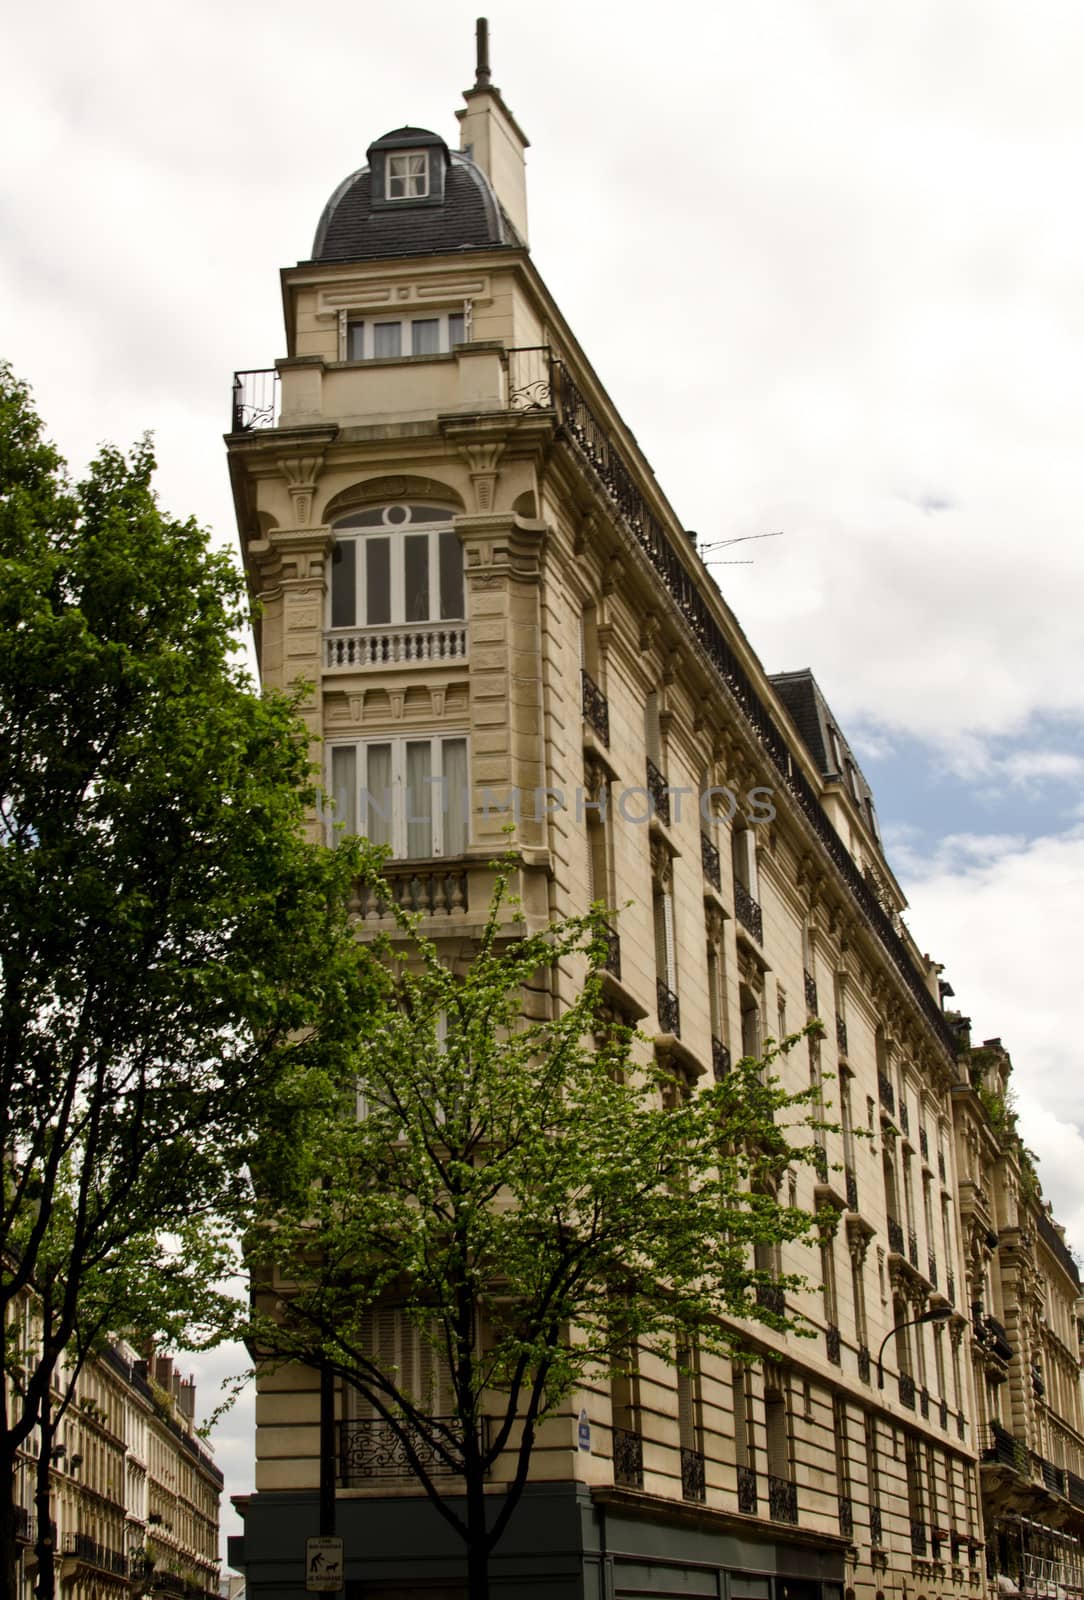 Old building in Montmartre, Paris.